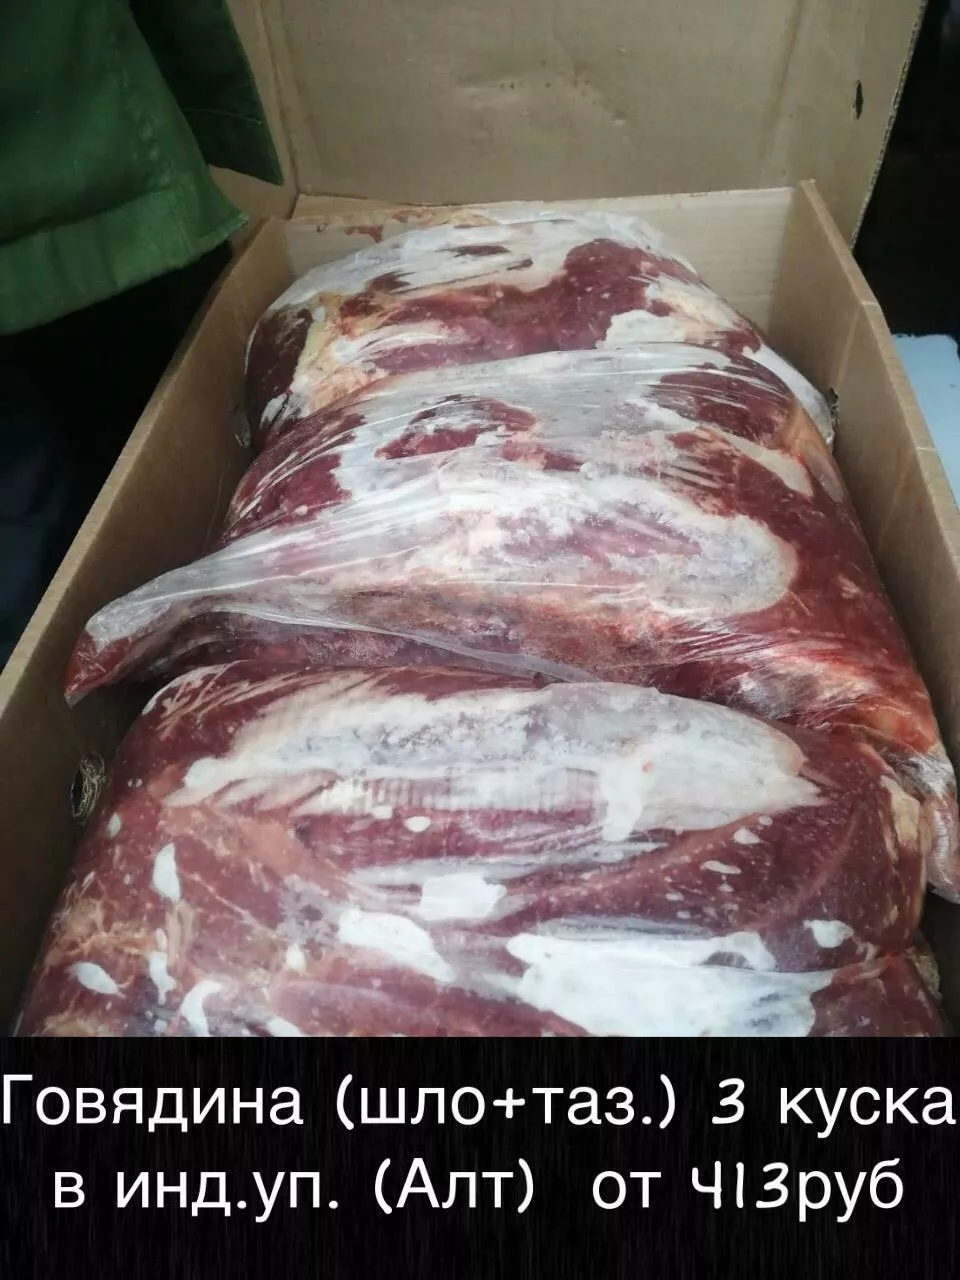 мясо оптом доставка красноярск бесплатно в Красноярске и Красноярском крае 5